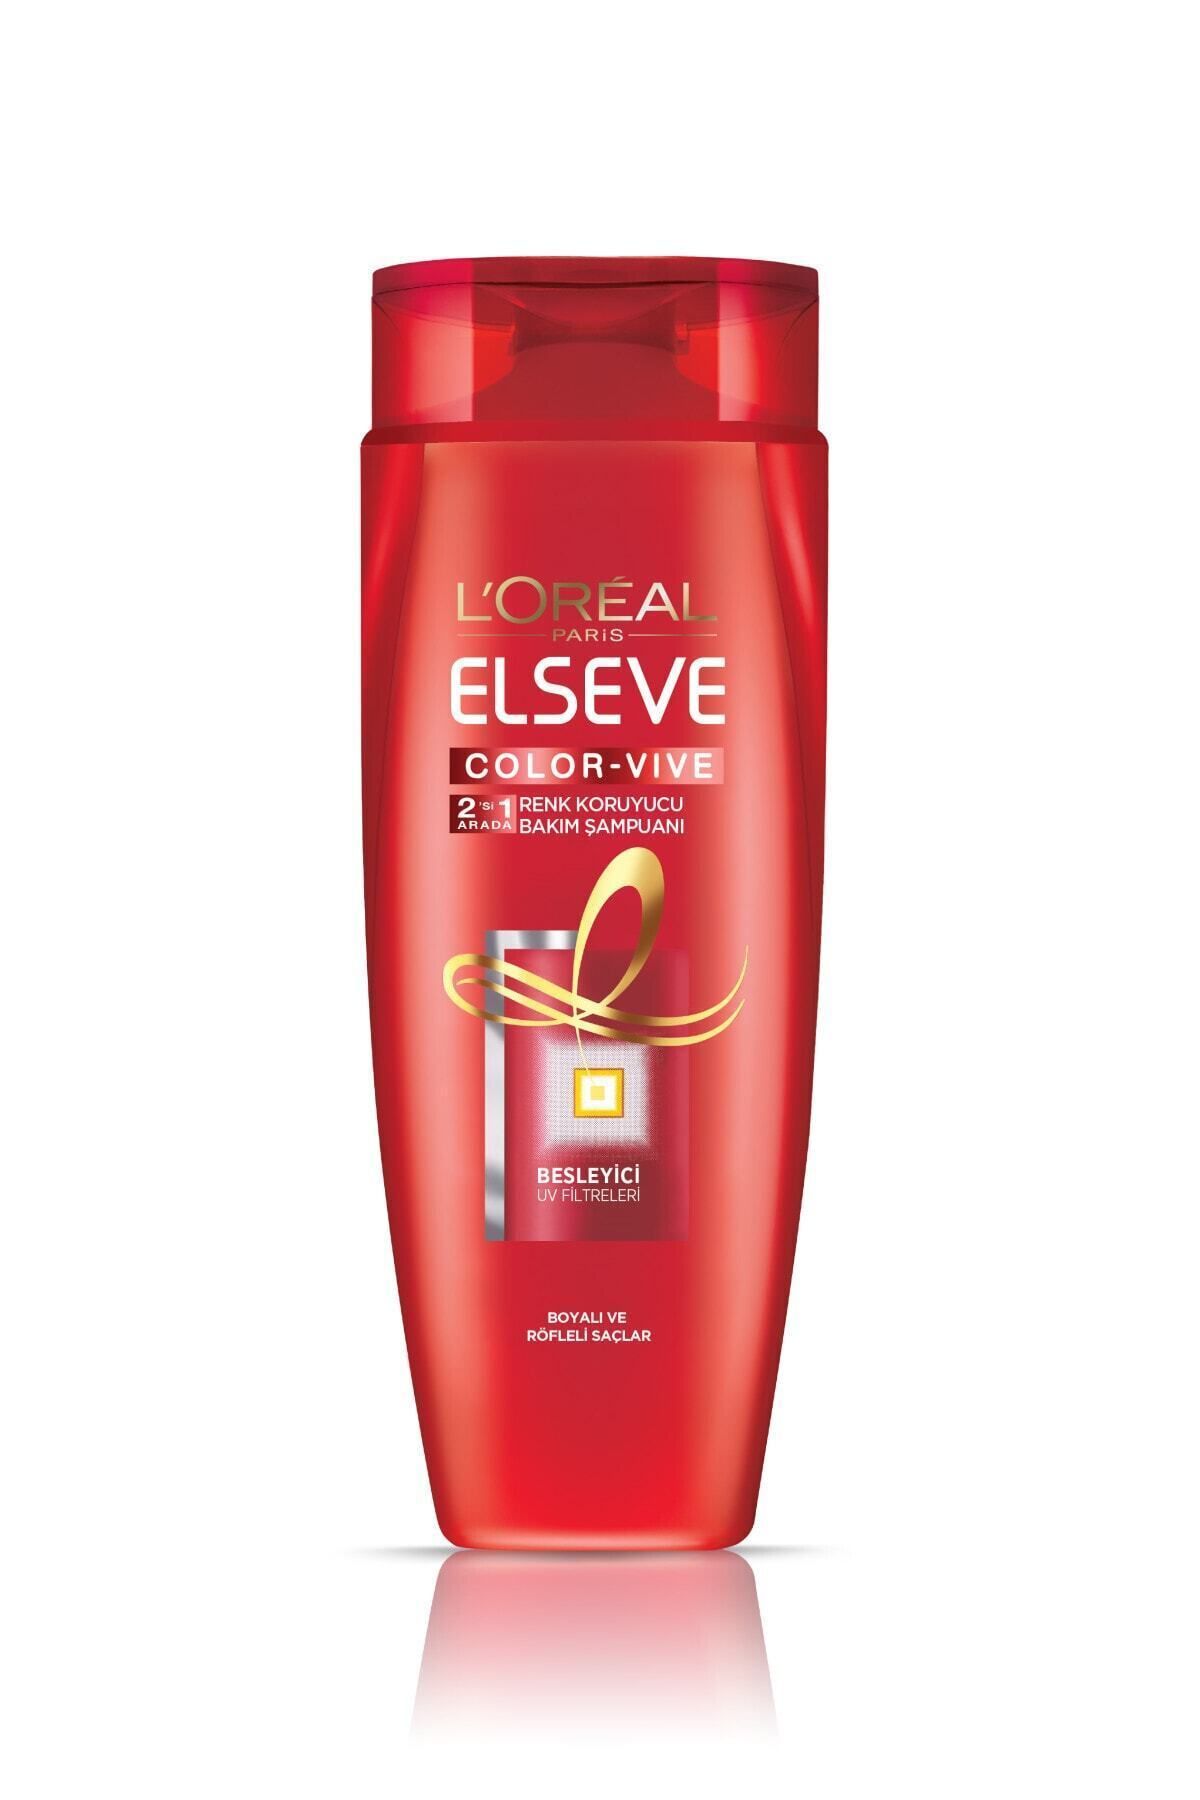 Elseve L'oréal Paris Colorvive Renk Koruyucu Bakım Şampuanı 2'si 1 Arada 360 ml